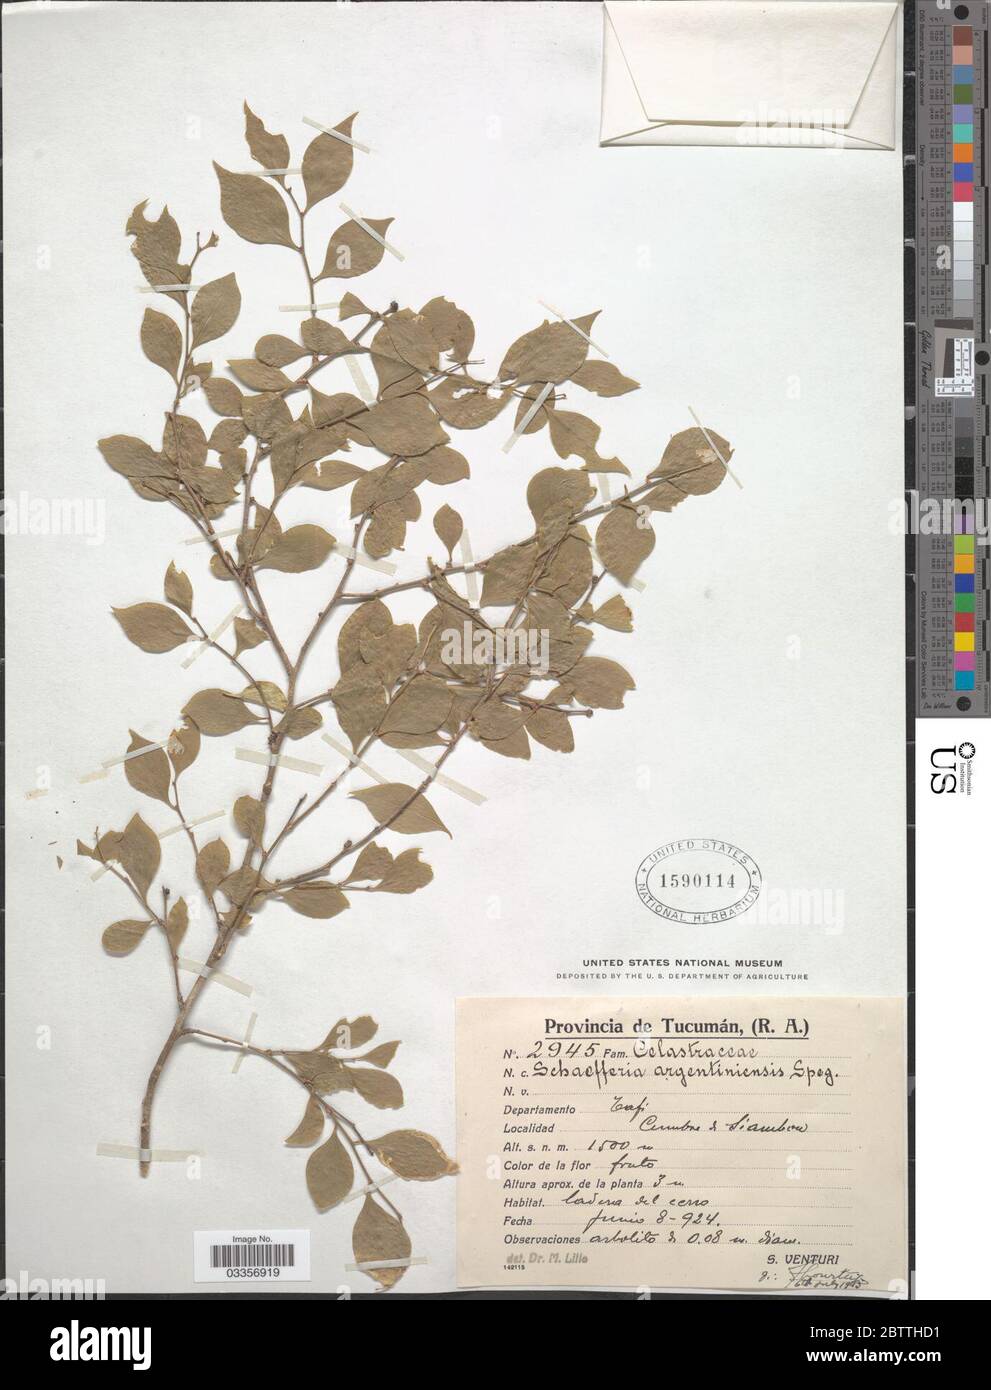 Schaefferia argentinensis Speg. Stock Photo